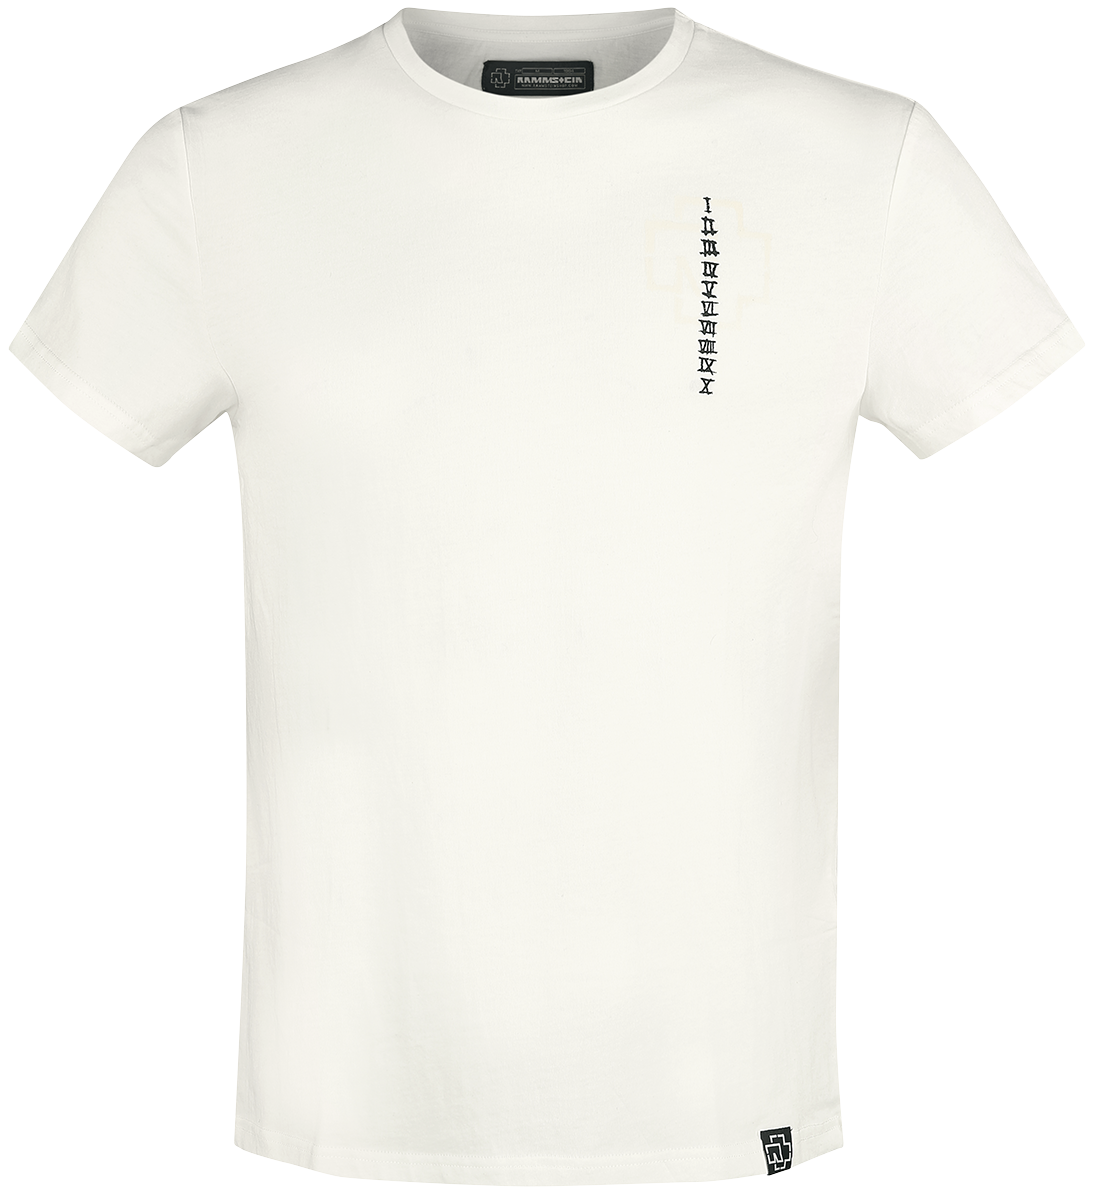 Rammstein T-Shirt - Sonne - S bis 3XL - für Männer - Größe 3XL - weiß  - Lizenziertes Merchandise!